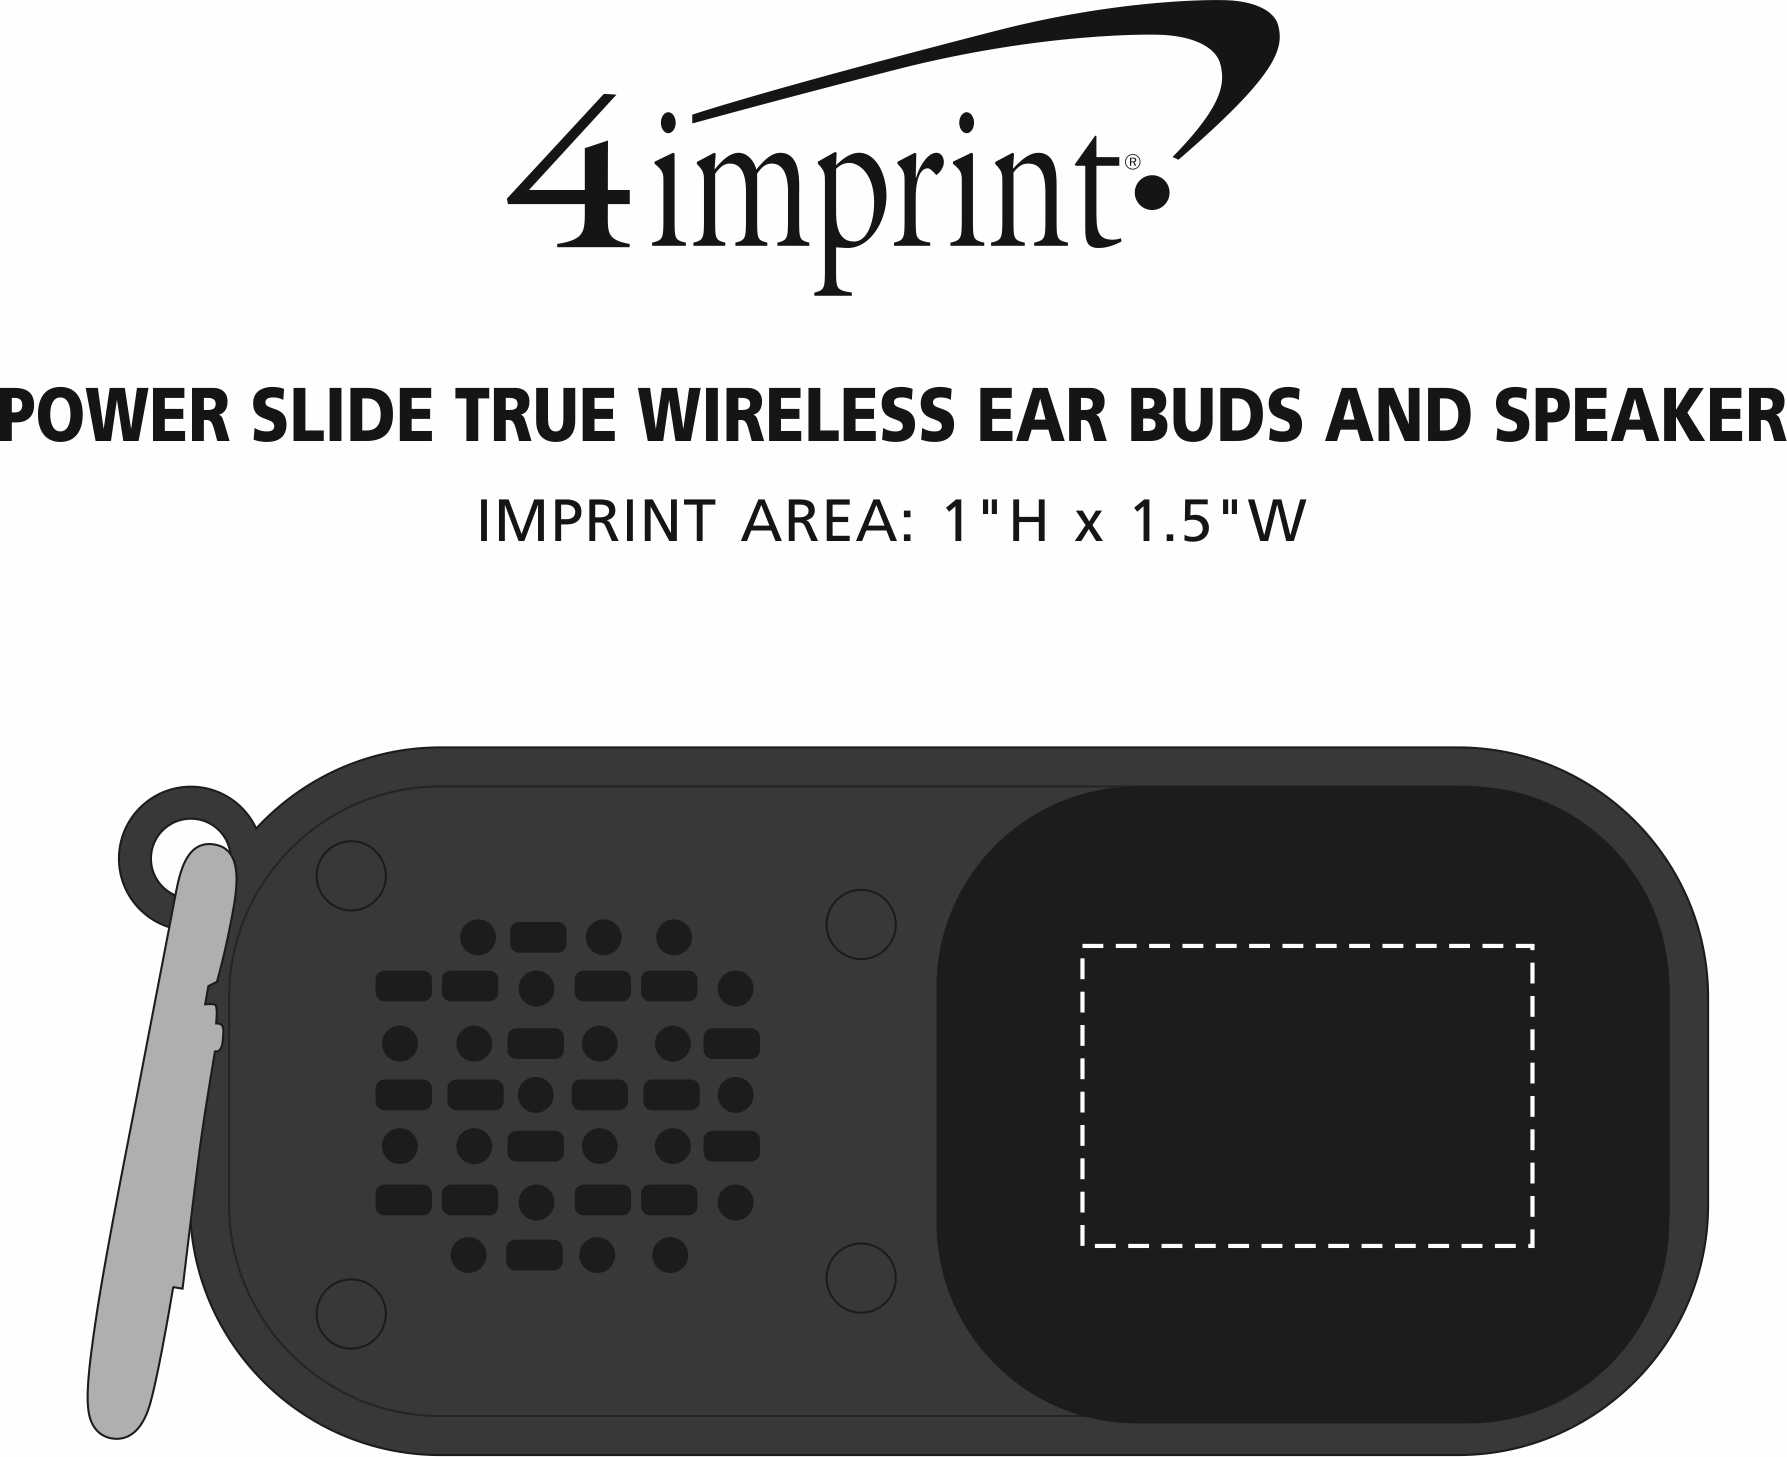 Imprint Area of Power Slide True Wireless Ear Buds and Speaker